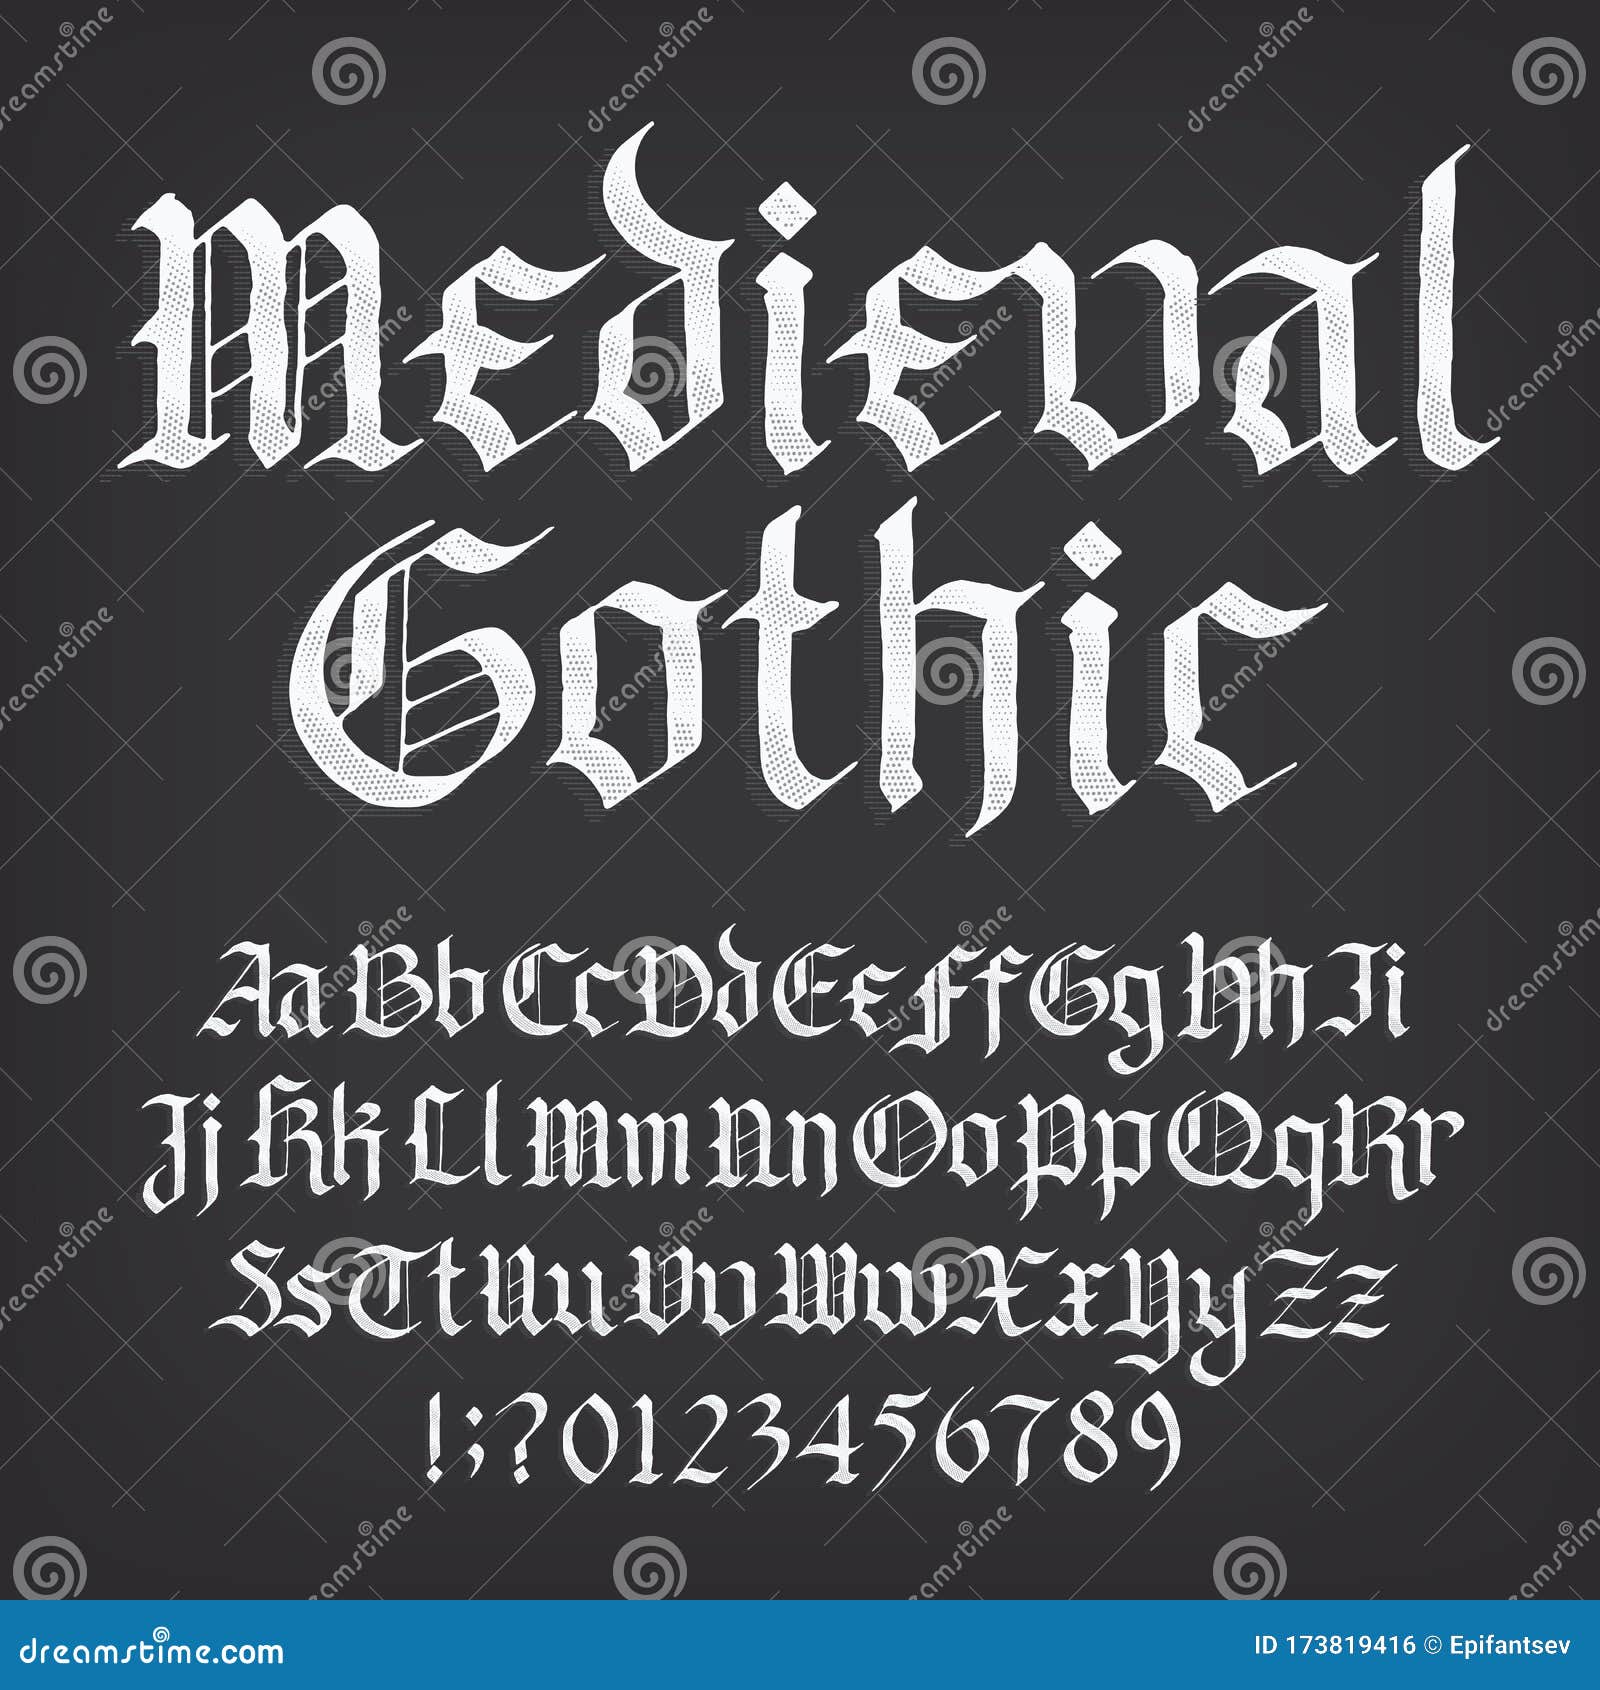 Bản font chữ Gothic Medieval là một trong những phông chữ được ưa chuộng nhất trong thiết kế, với những nét đậm chất cổ điển, tạo nên sự độc đáo và uy tín.